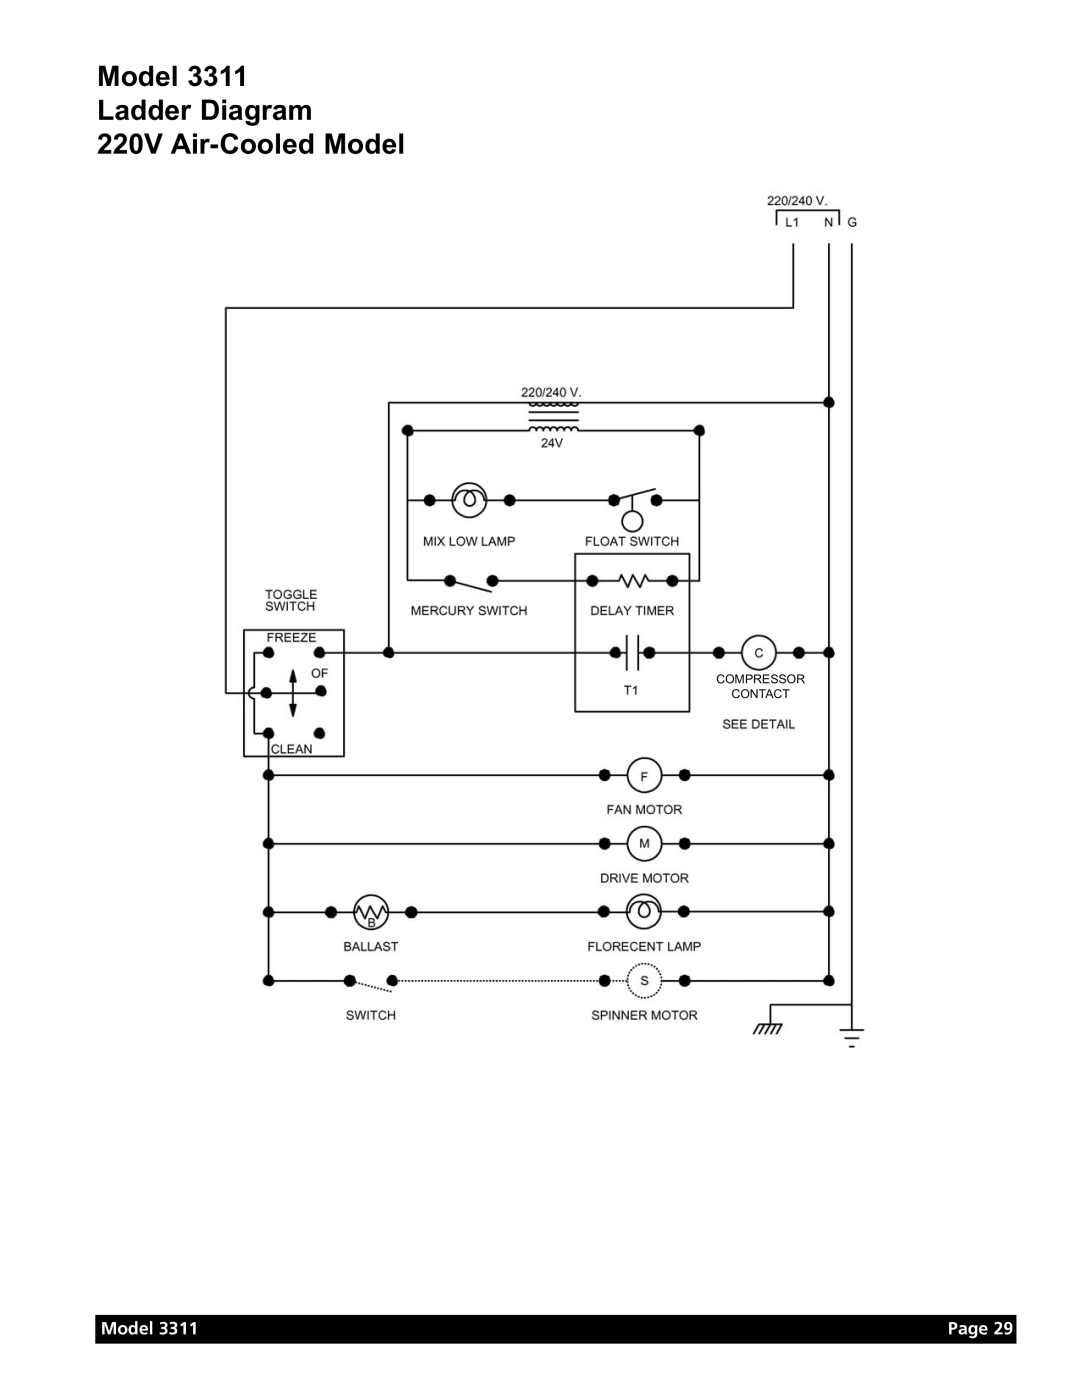 Grindmaster Model 3311 manual Model Ladder Diagram 220V Air-Cooled Model, Page, Compressor Contact 